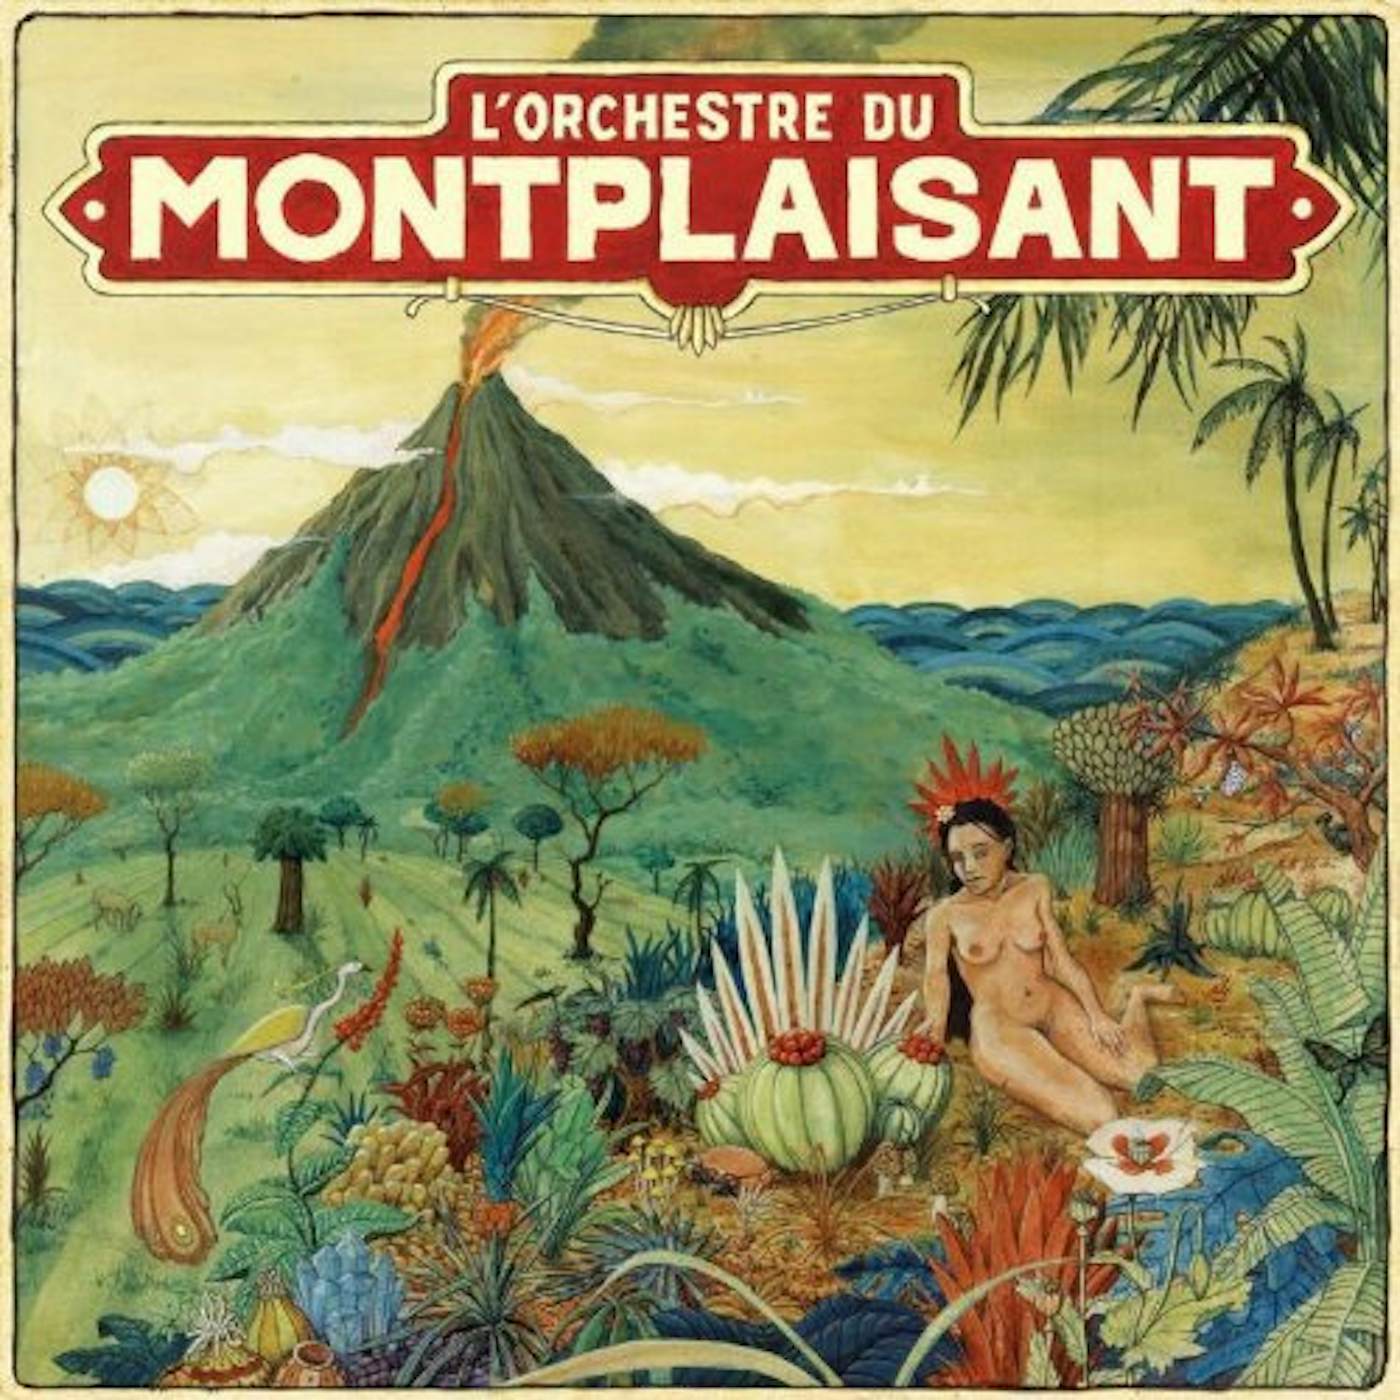 ORCHESTRE DU MONTPLAISANT Vinyl Record